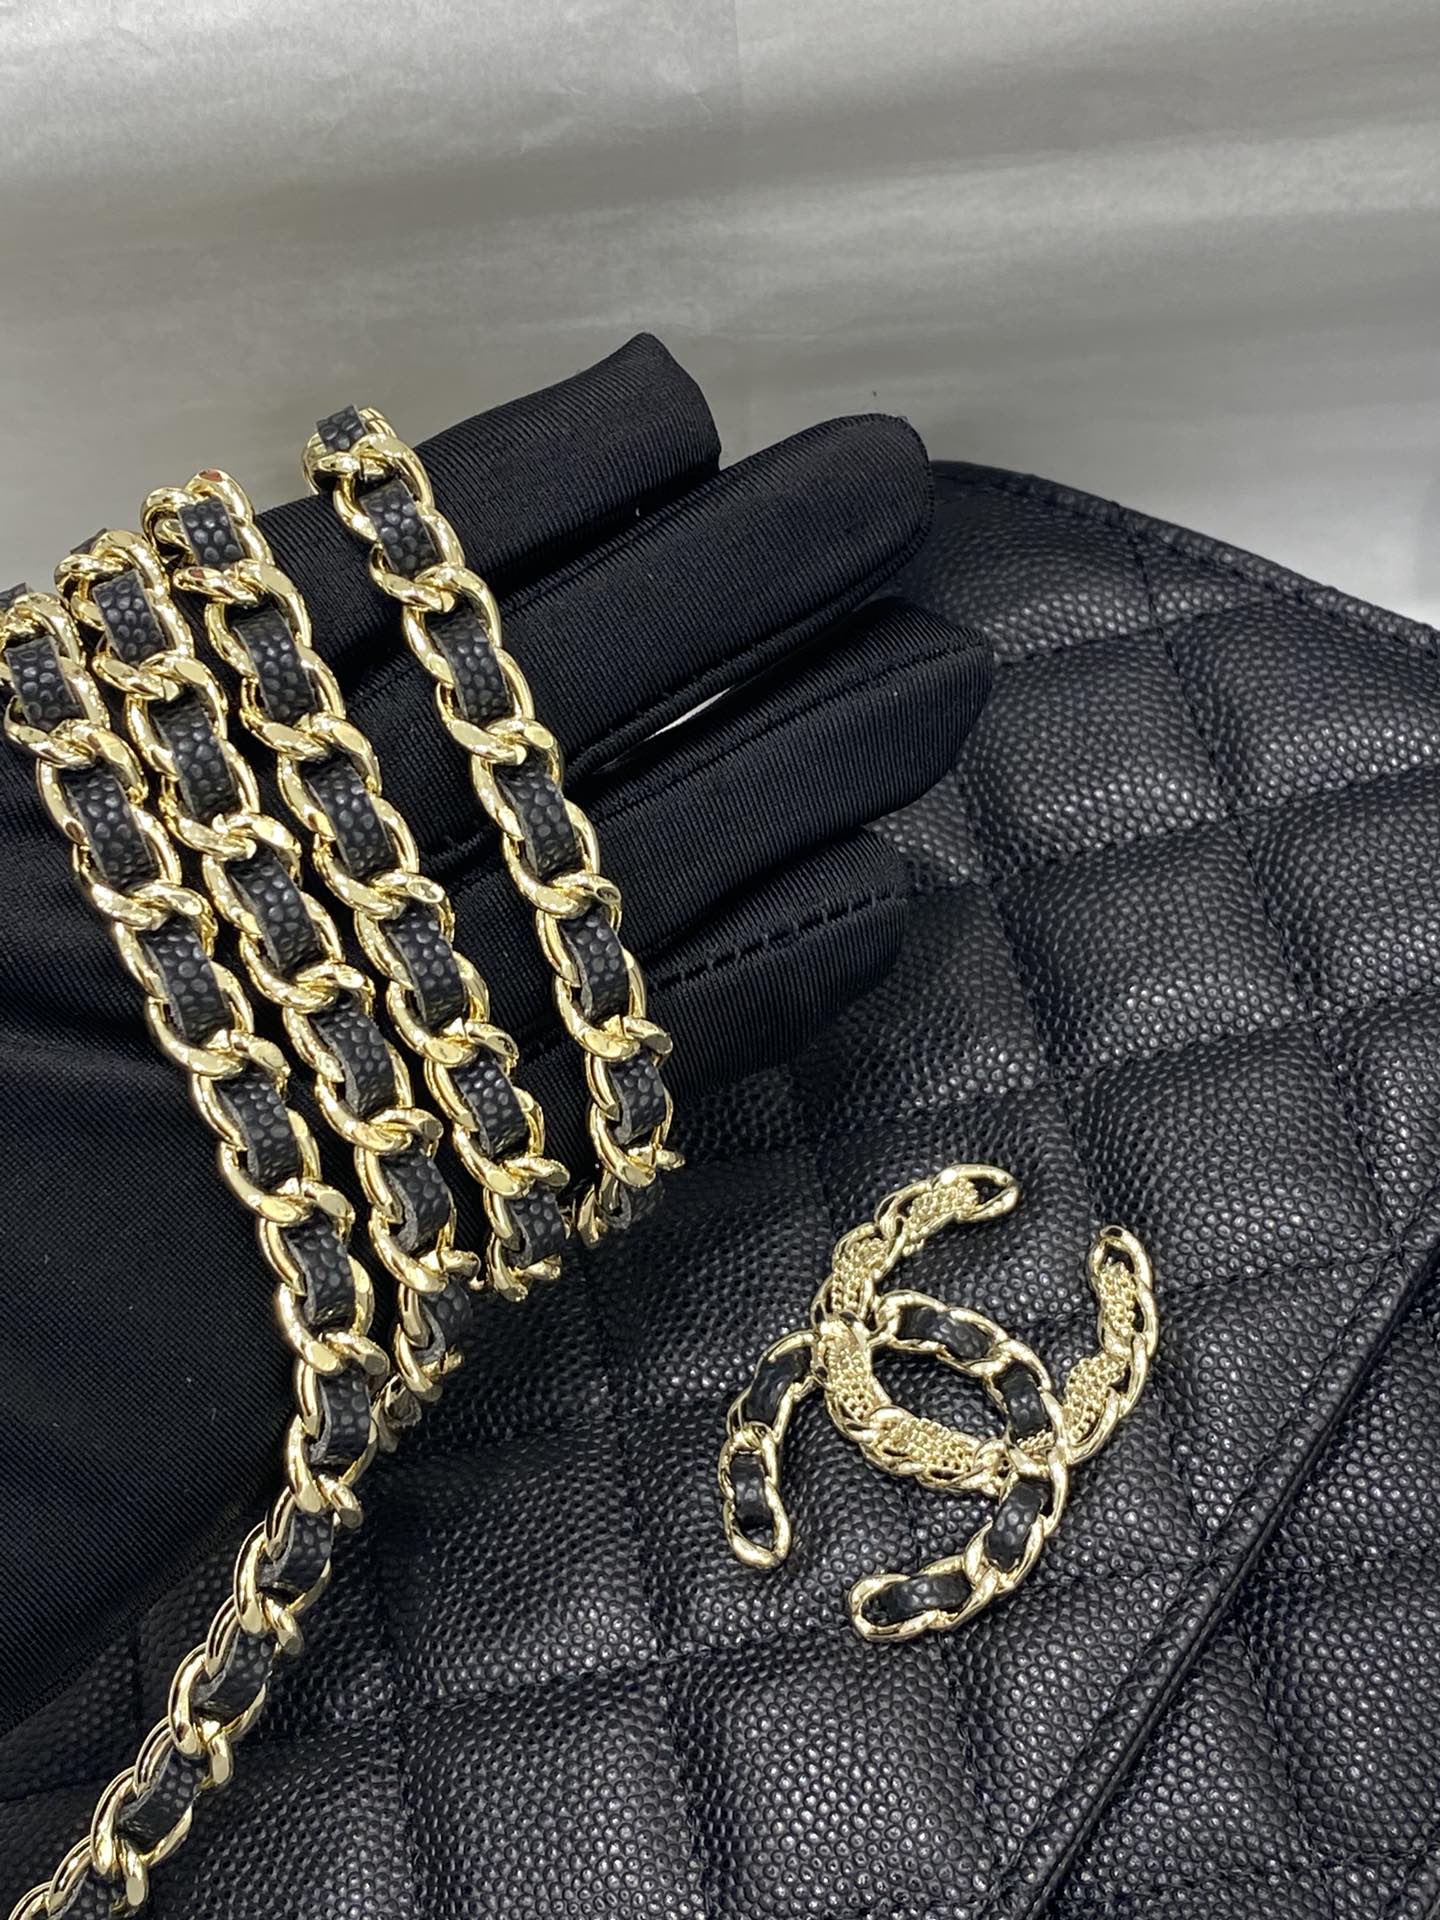 Chanel冬季神仙颜值之woc 皮子+金属搭配 19.5-12-3.5 黑色小牛皮～浅金扣